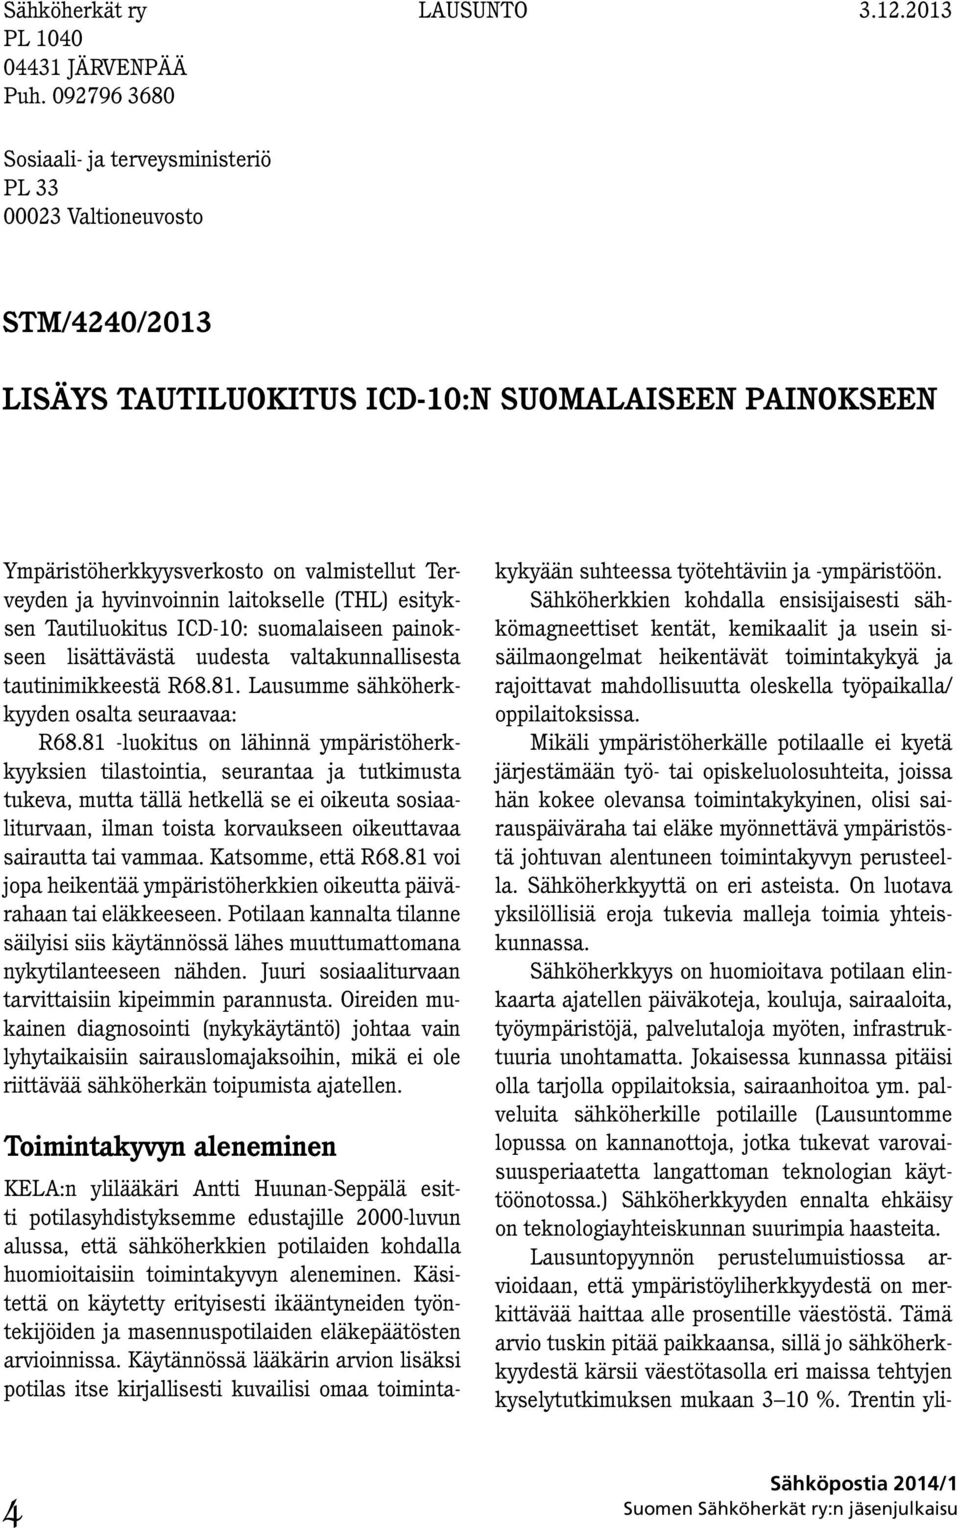 laitokselle (THL) esityksen Tautiluokitus ICD-10: suomalaiseen painokseen lisättävästä uudesta valtakunnallisesta tautinimikkeestä R68.81. Lausumme sähköherkkyyden osalta seuraavaa: R68.